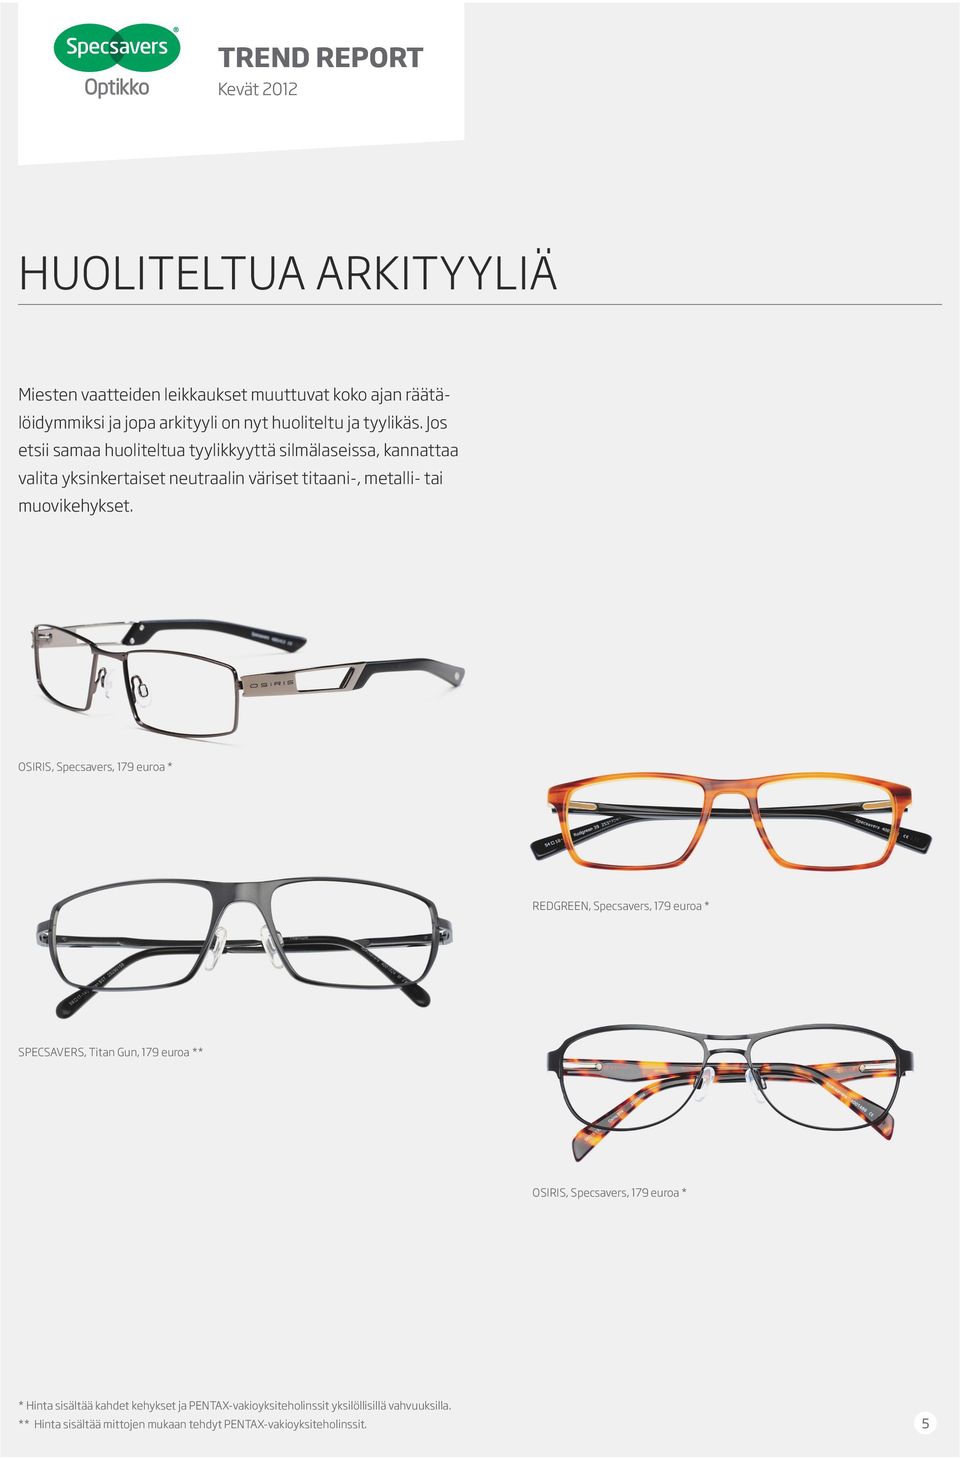 Jos etsii samaa huoliteltua tyylikkyyttä silmälaseissa, kannattaa valita yksinkertaiset neutraalin väriset